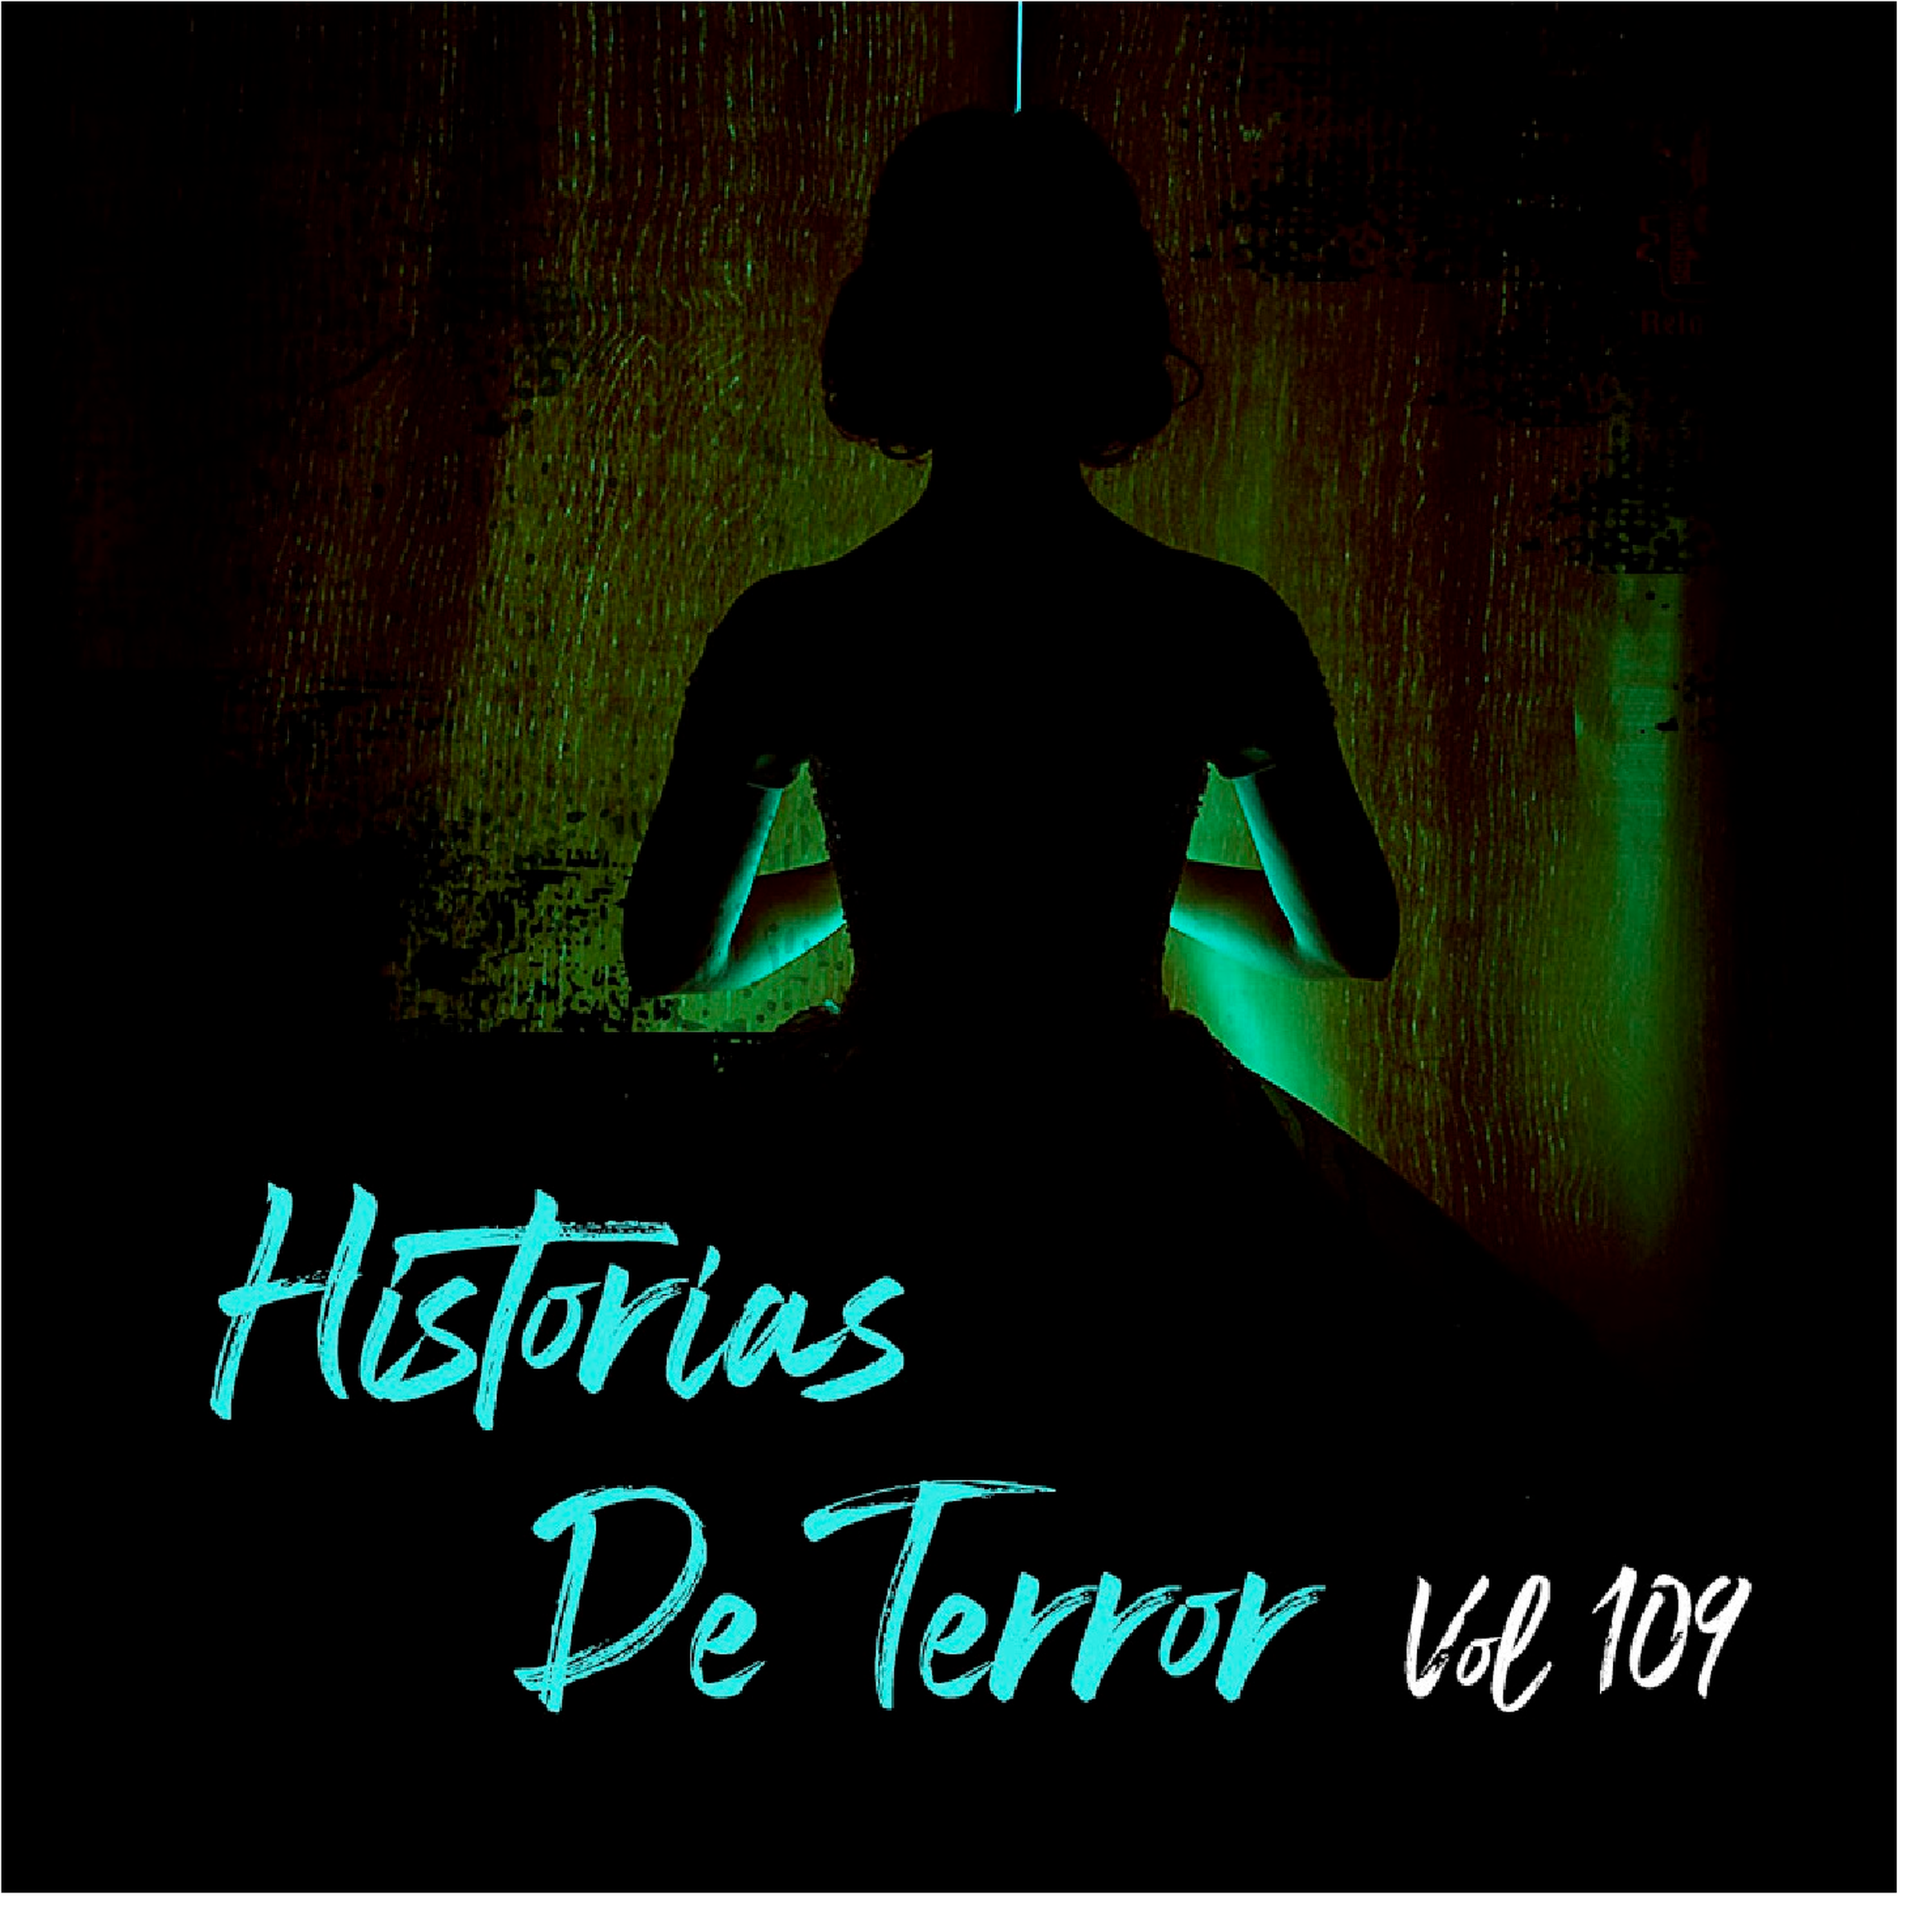 Historias De Terror Vol 109 Relatos De Horror Relatos De Horror Historias De Terror 4499